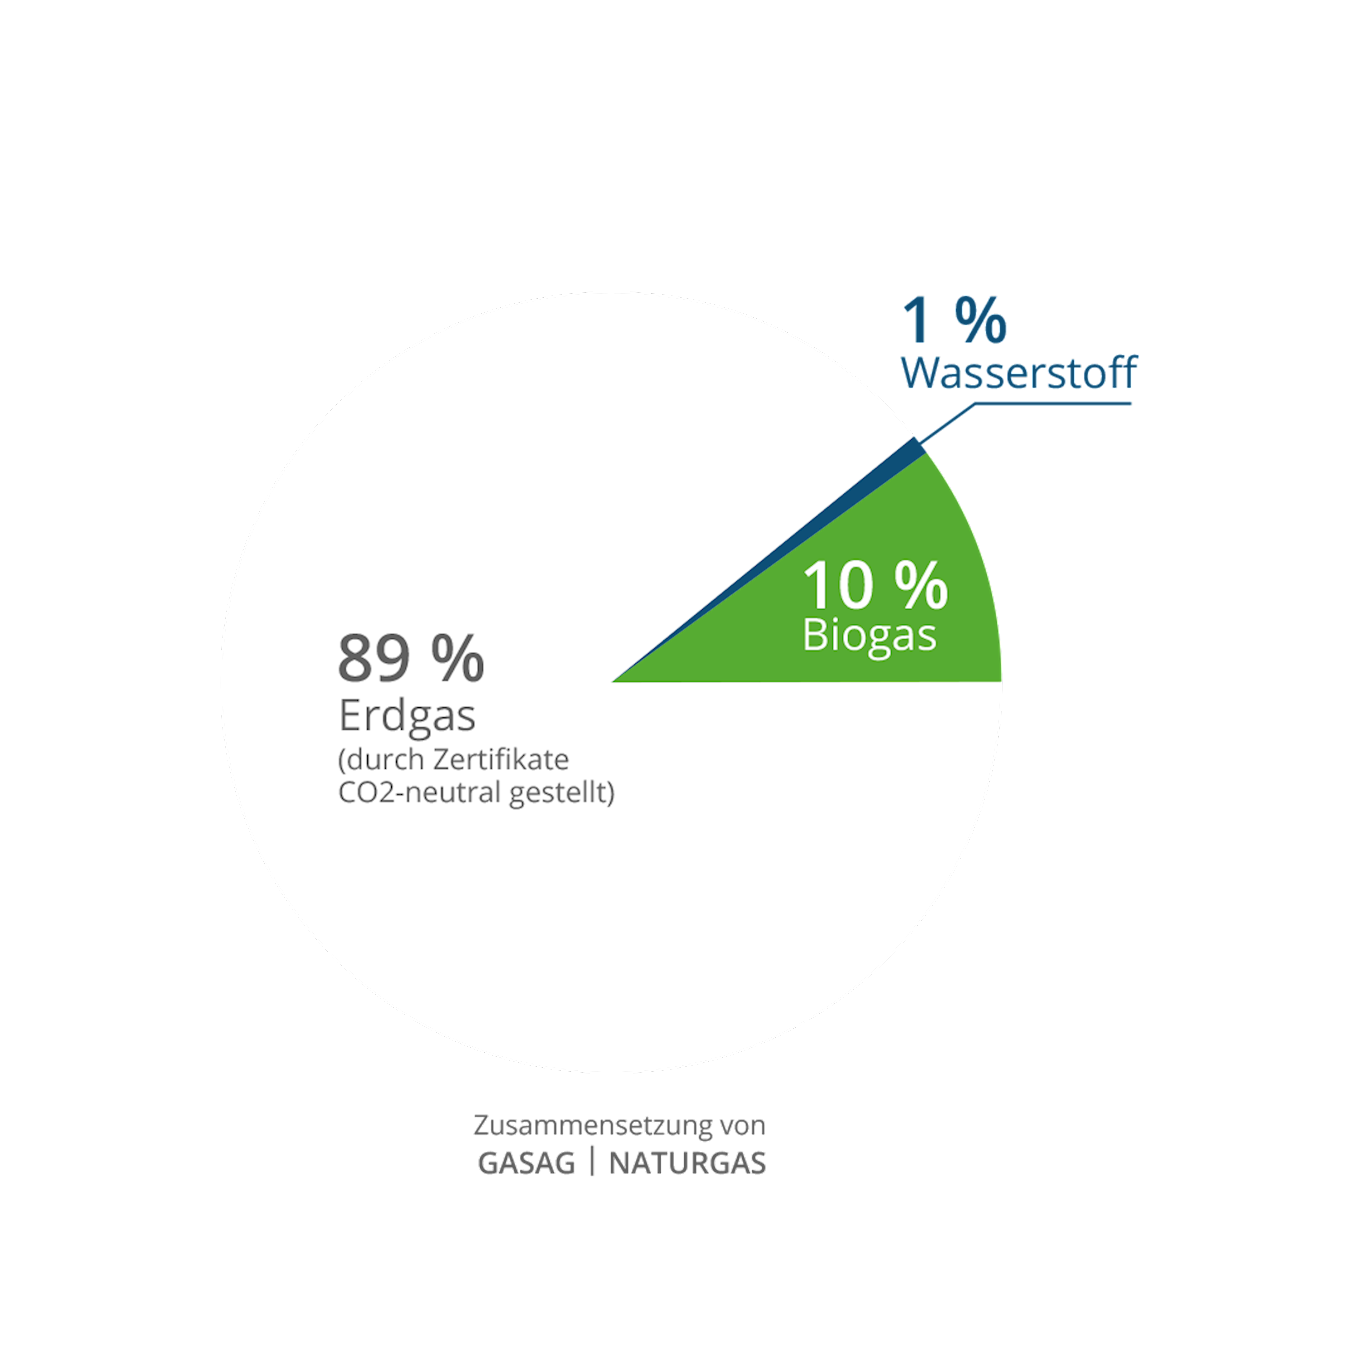 Zusammensetzung von GASAG | Naturgas: 1% Wasserstoff, 10% Biogas und 89% über Klima-Zertifikate CO2-neutral gestelltes Gas